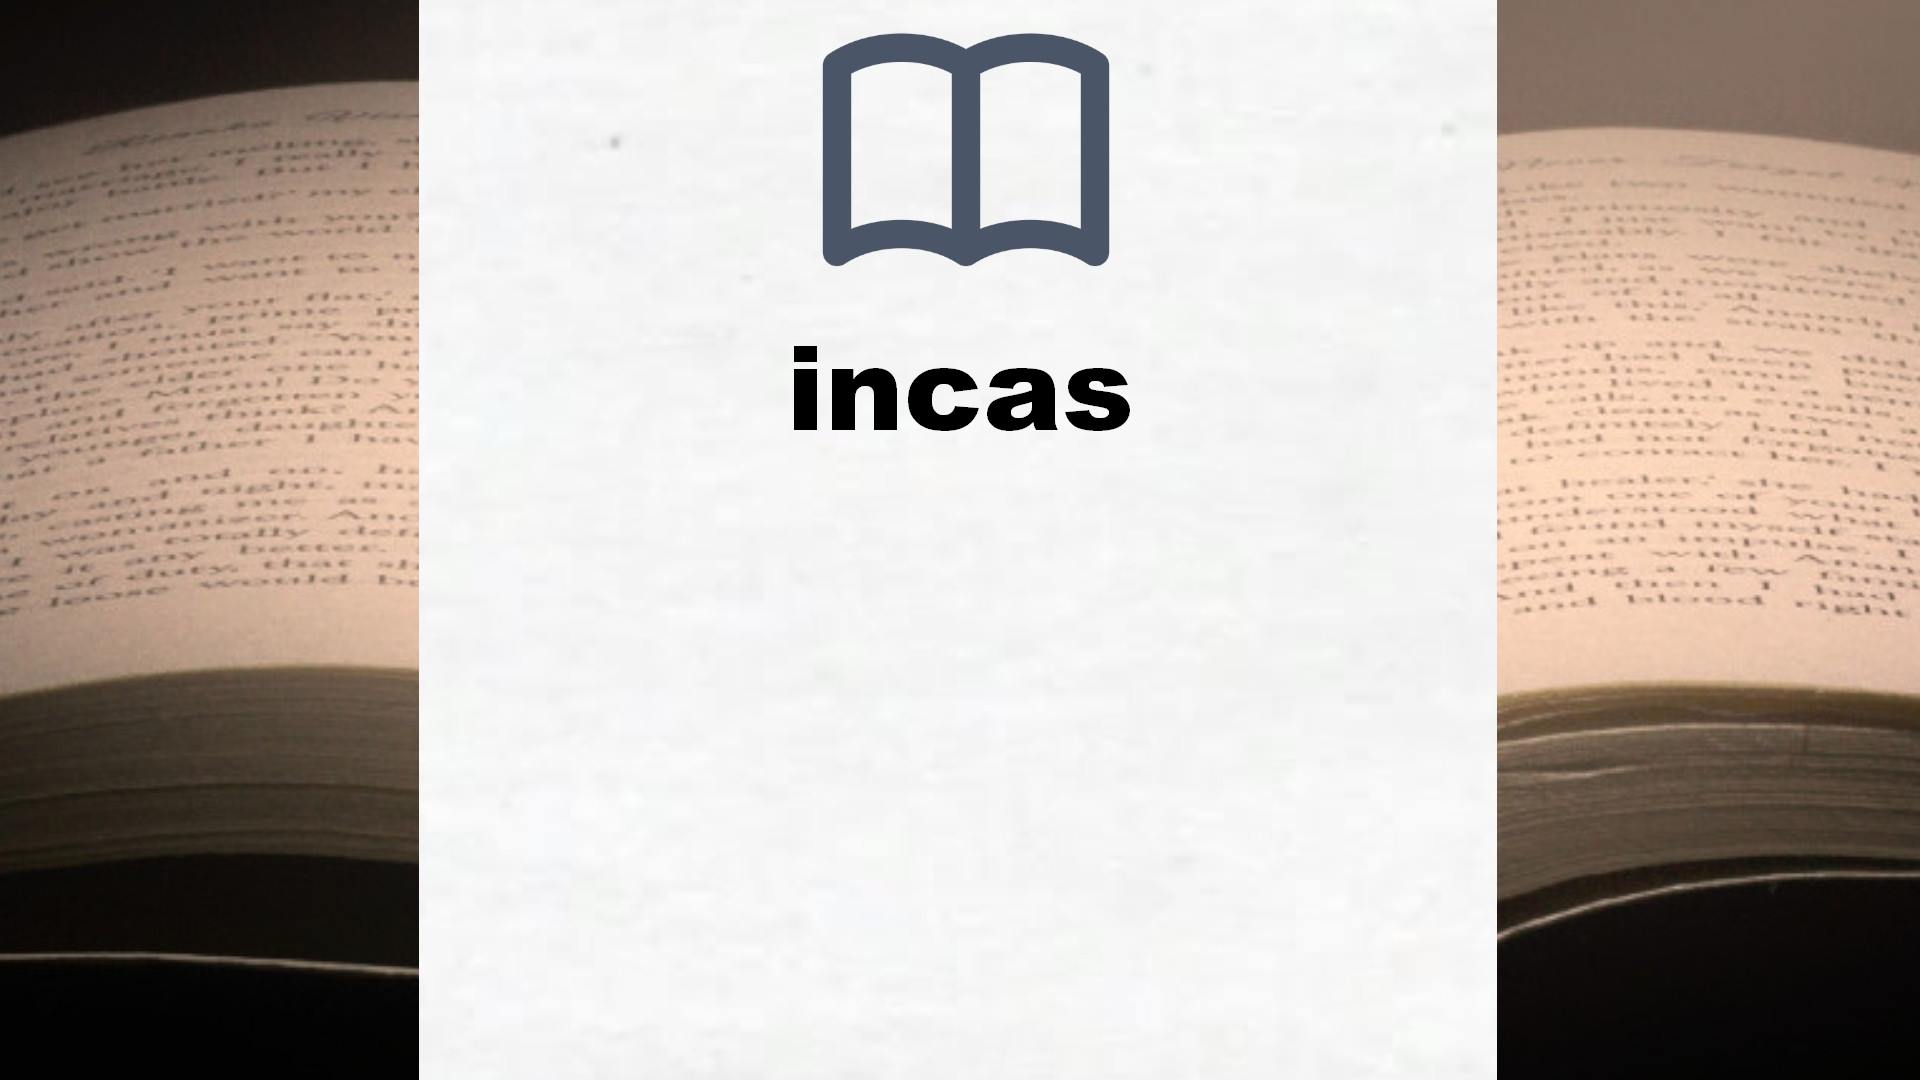 Libros sobre incas